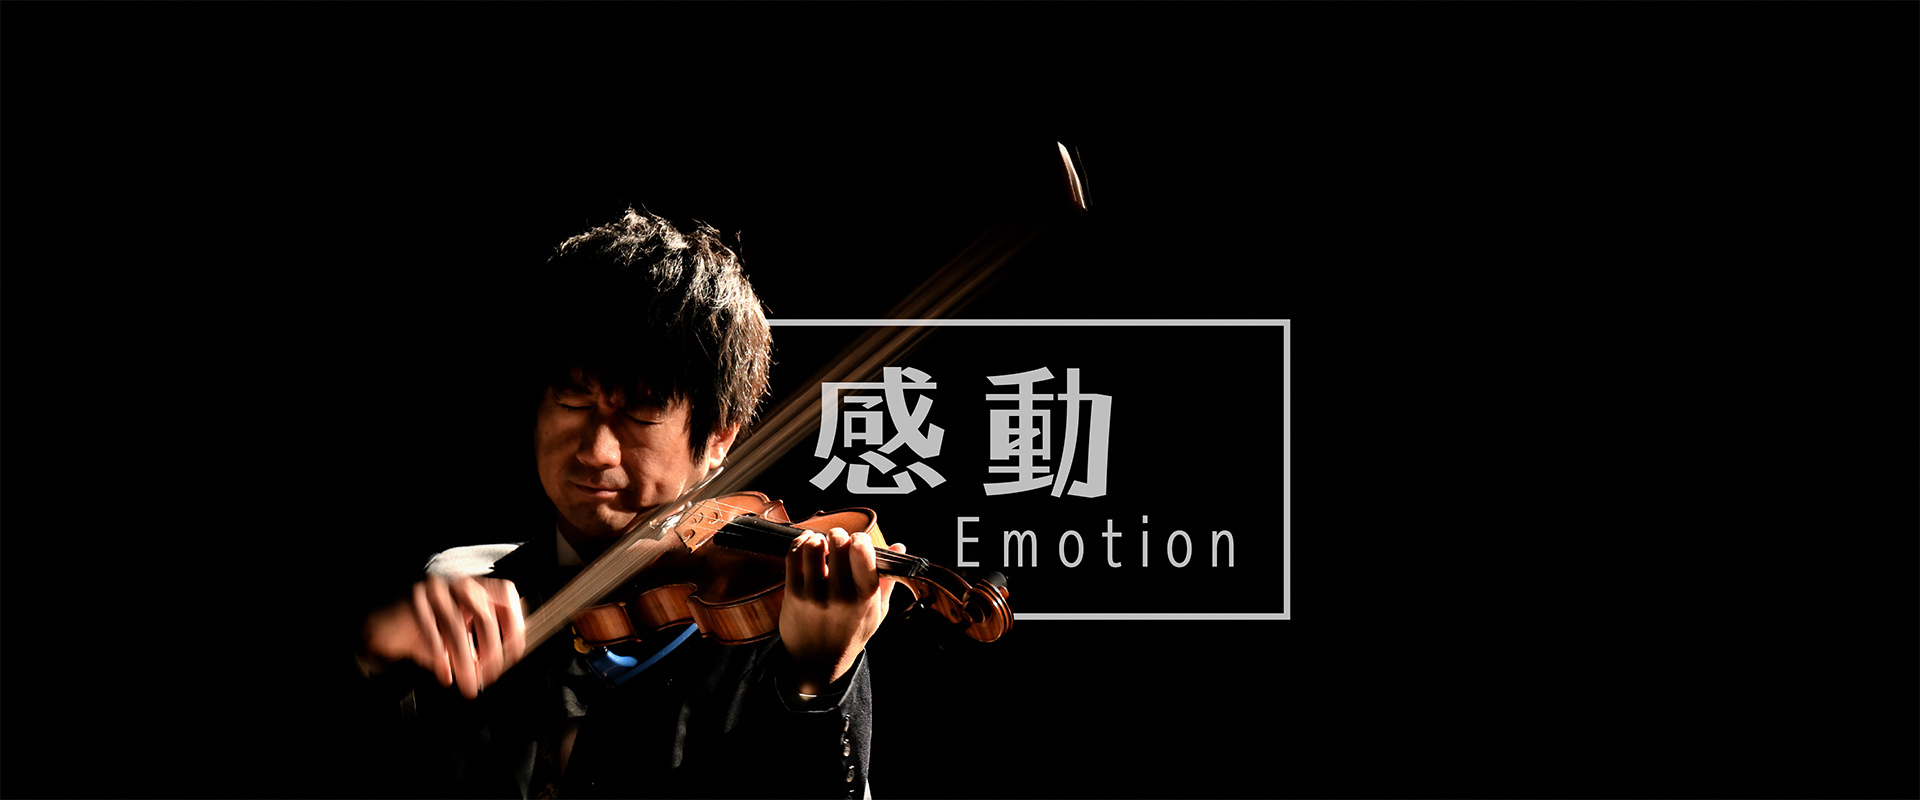 感動 Emotion